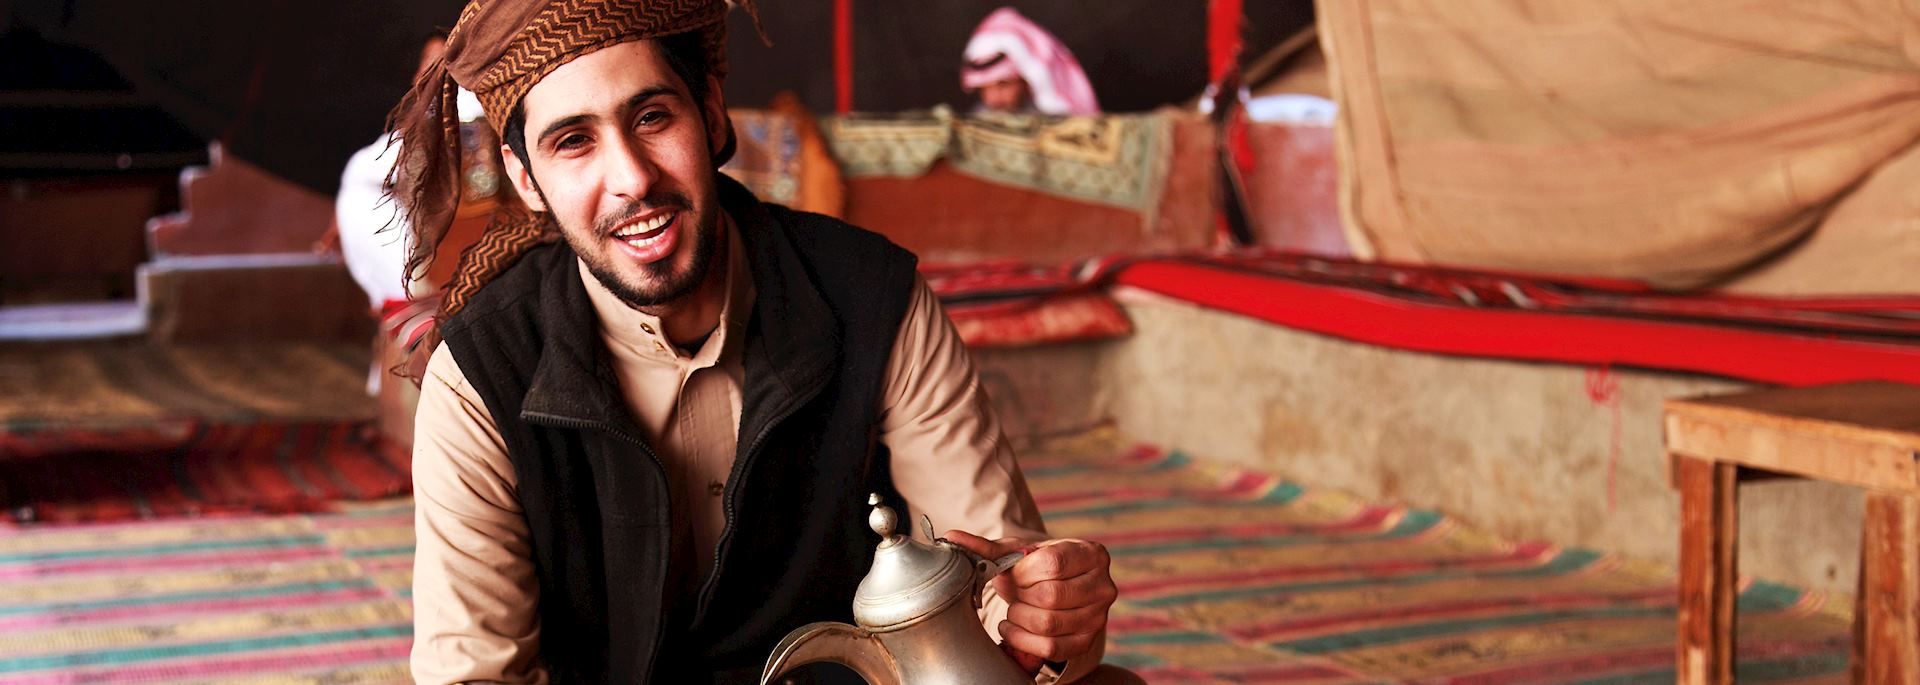 Man serving coffee in Jordan